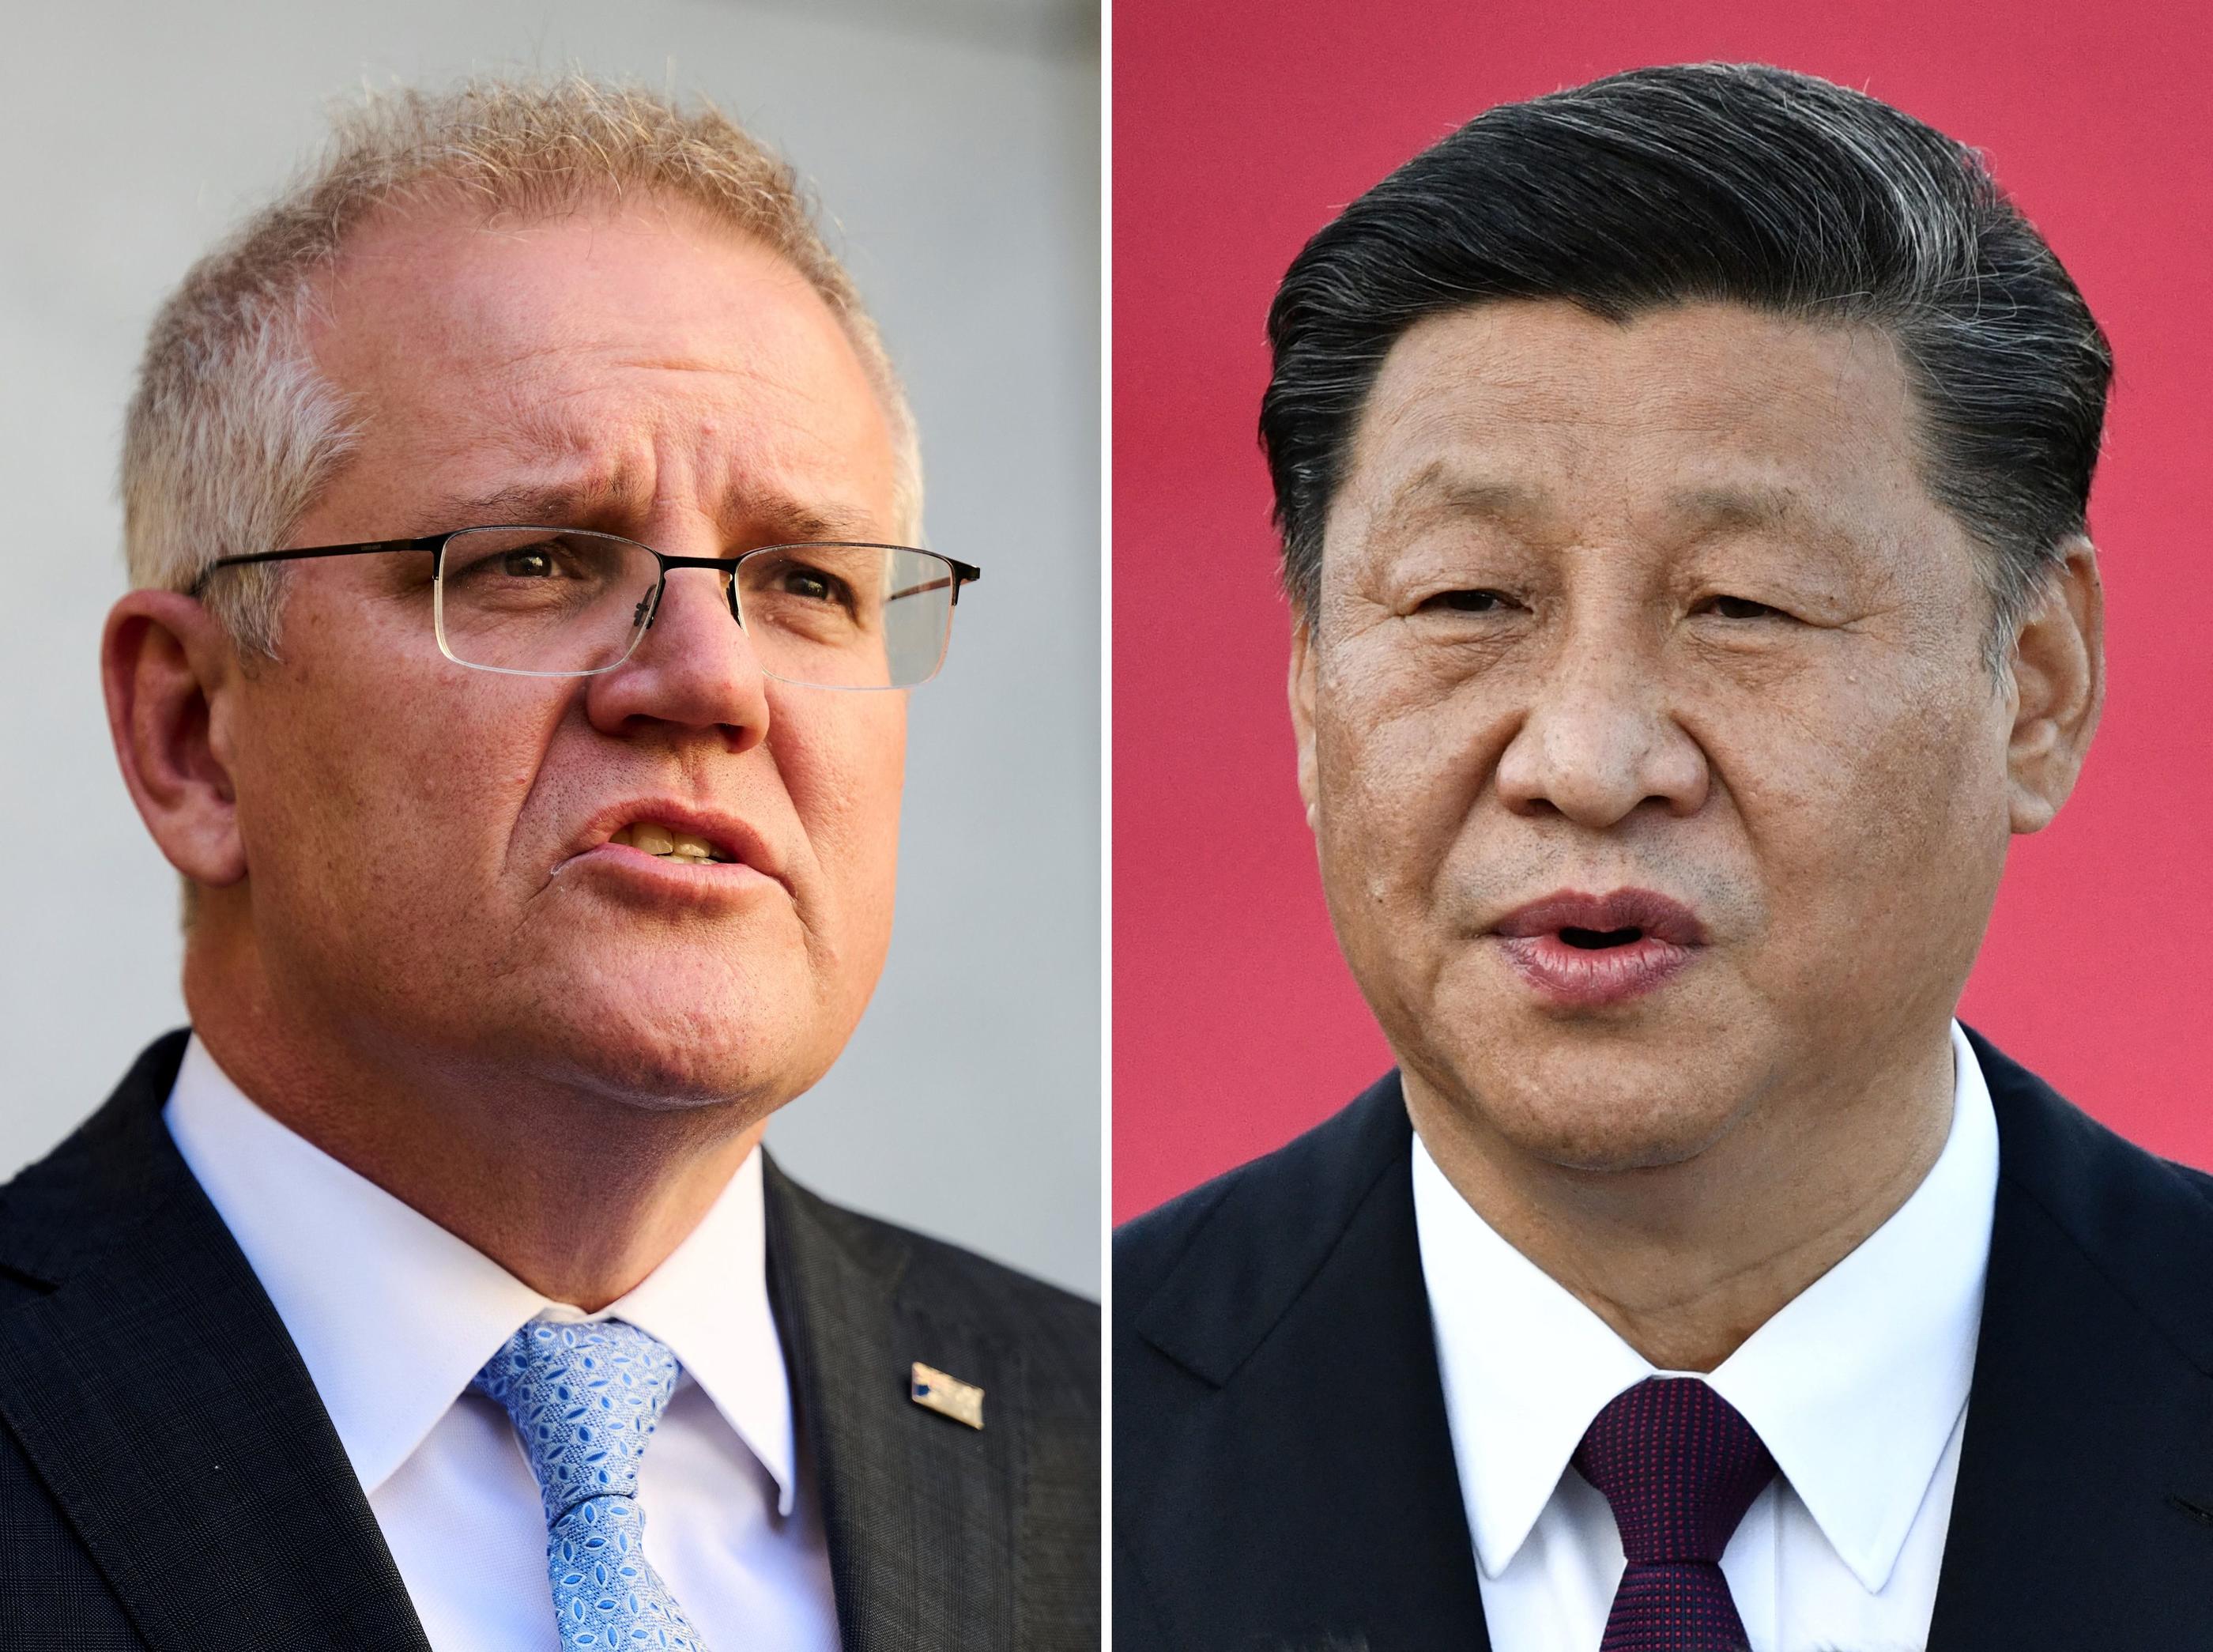 Le 16 septembre 2021, le Premier ministre australien Scott Morrison (à gauche) a lancé une  « invitation ouverte » à des entretiens avec le président chinois Xi Jinping (à droite), après avoir annoncé une série d'achats militaires technologiques stimulés par la force croissante de Pékin. AFP